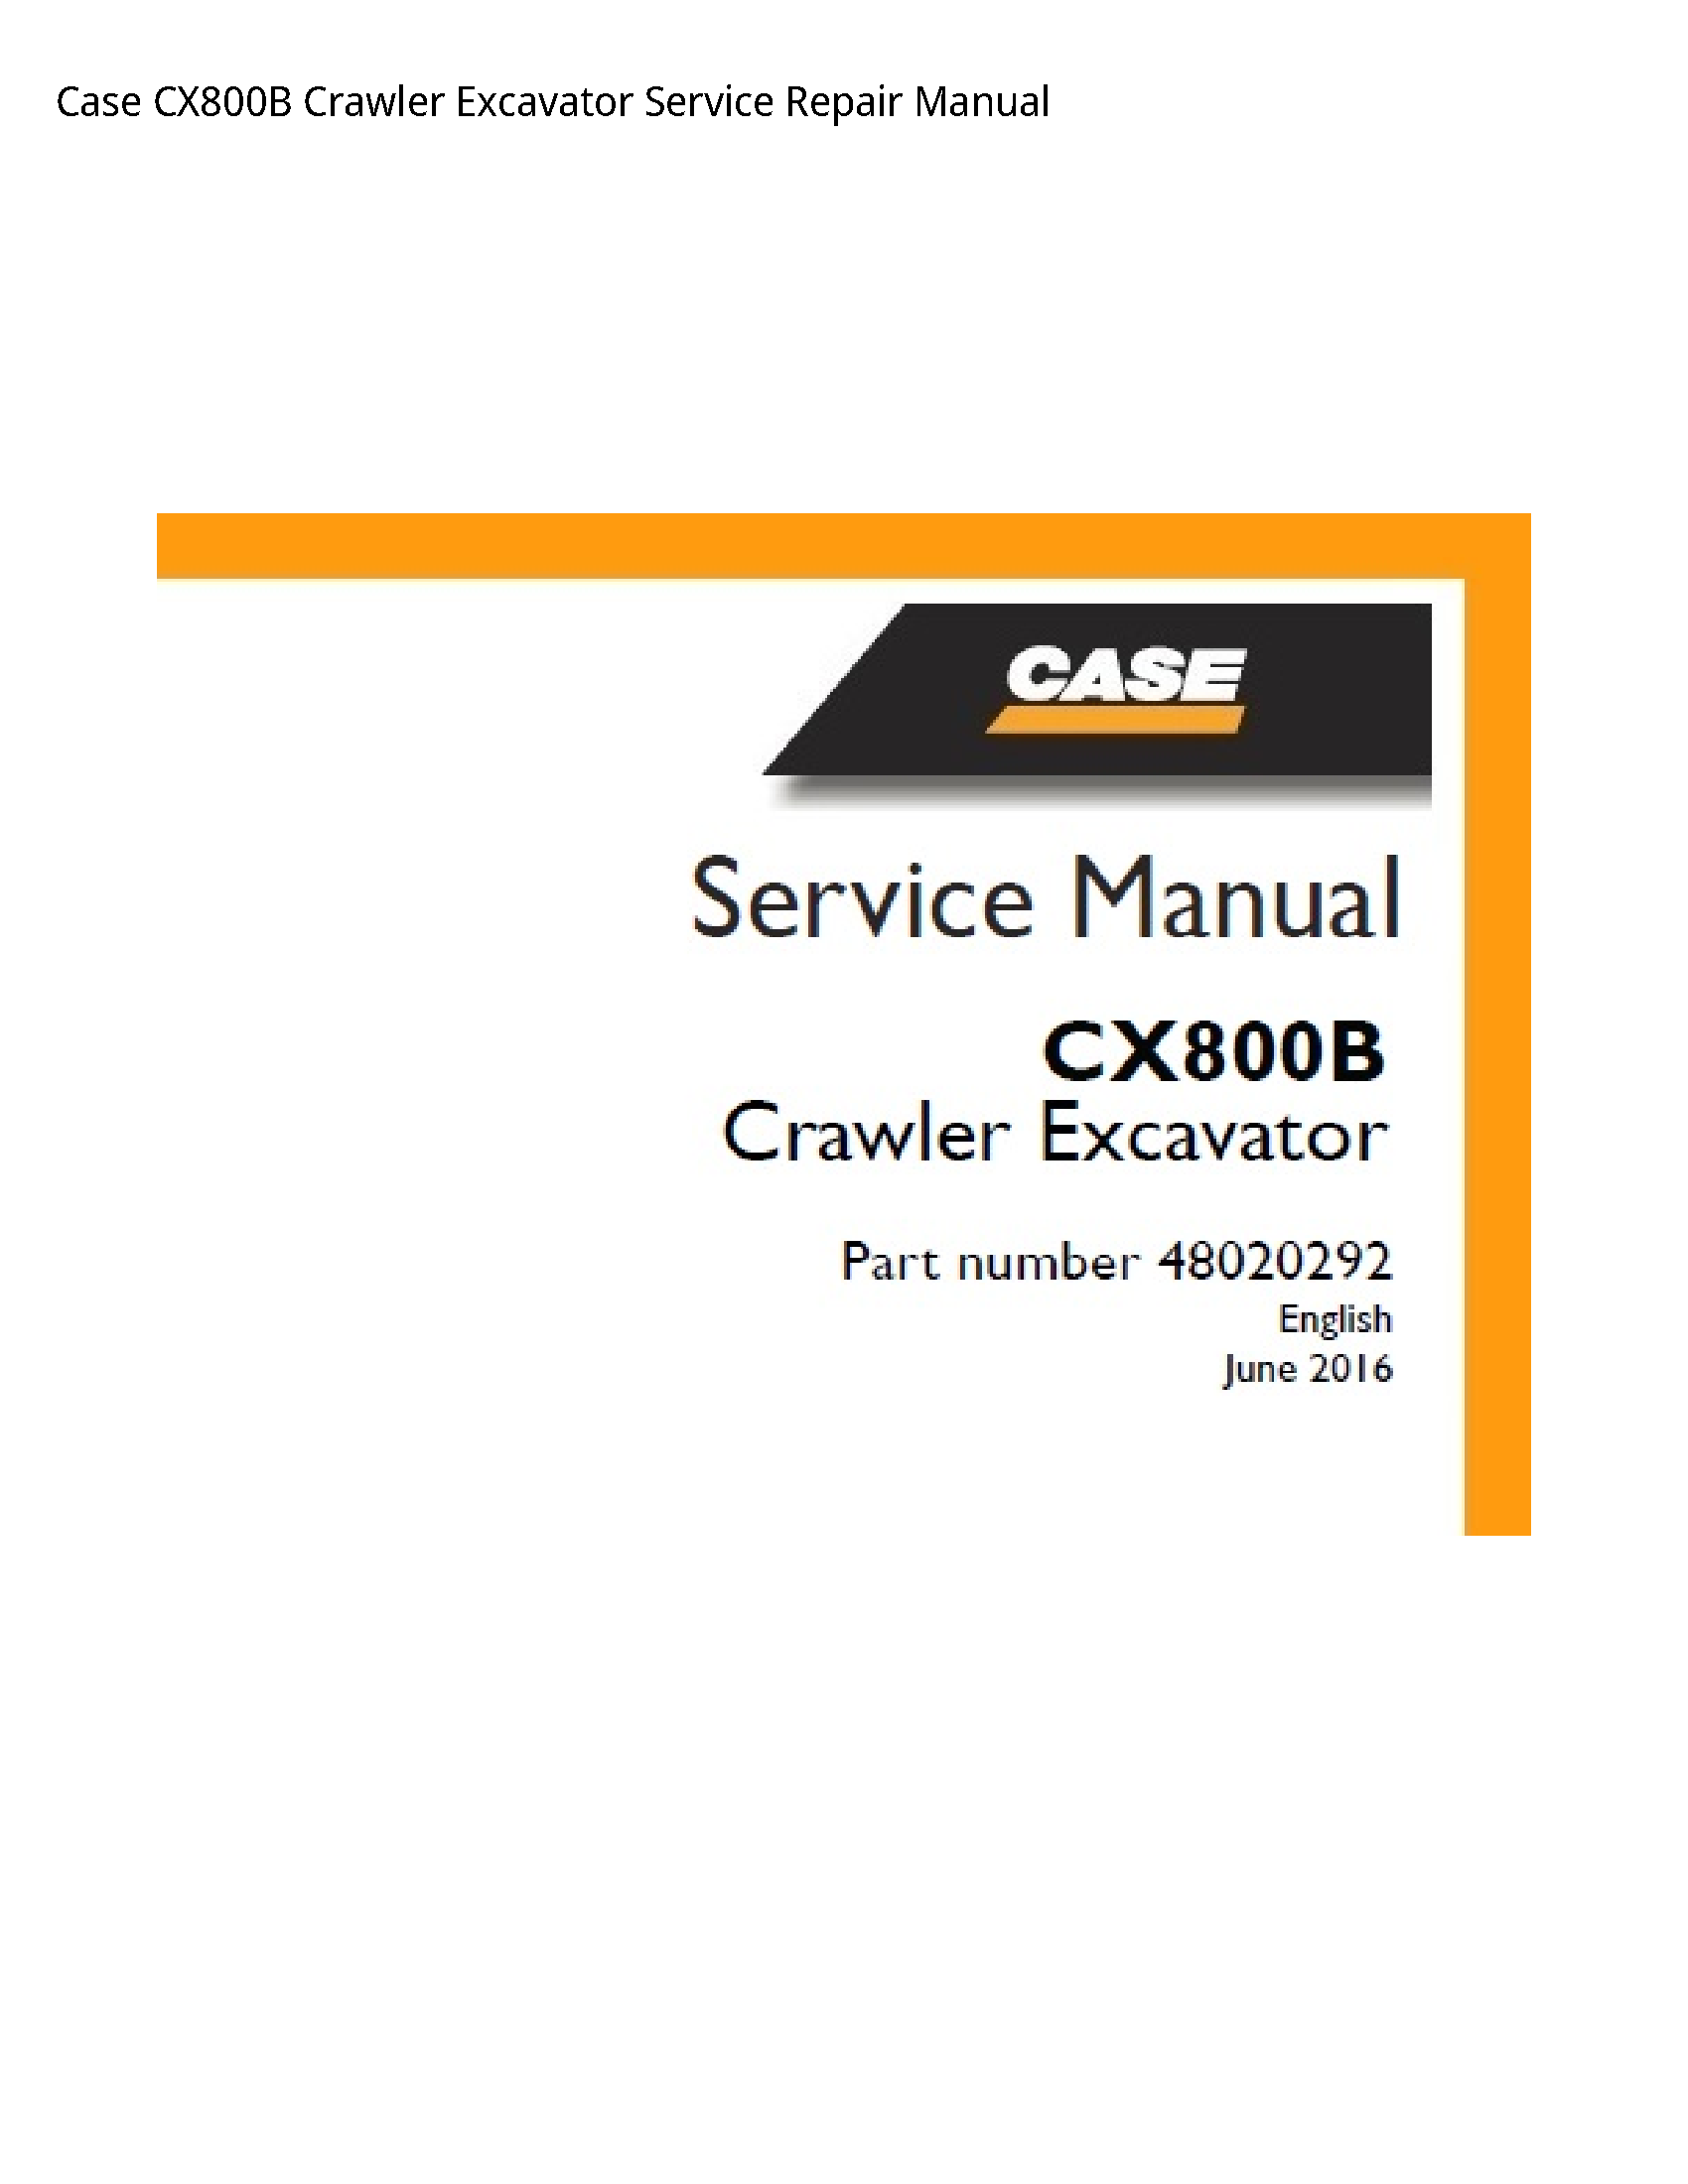 Case/Case IH CX800B Crawler Excavator manual